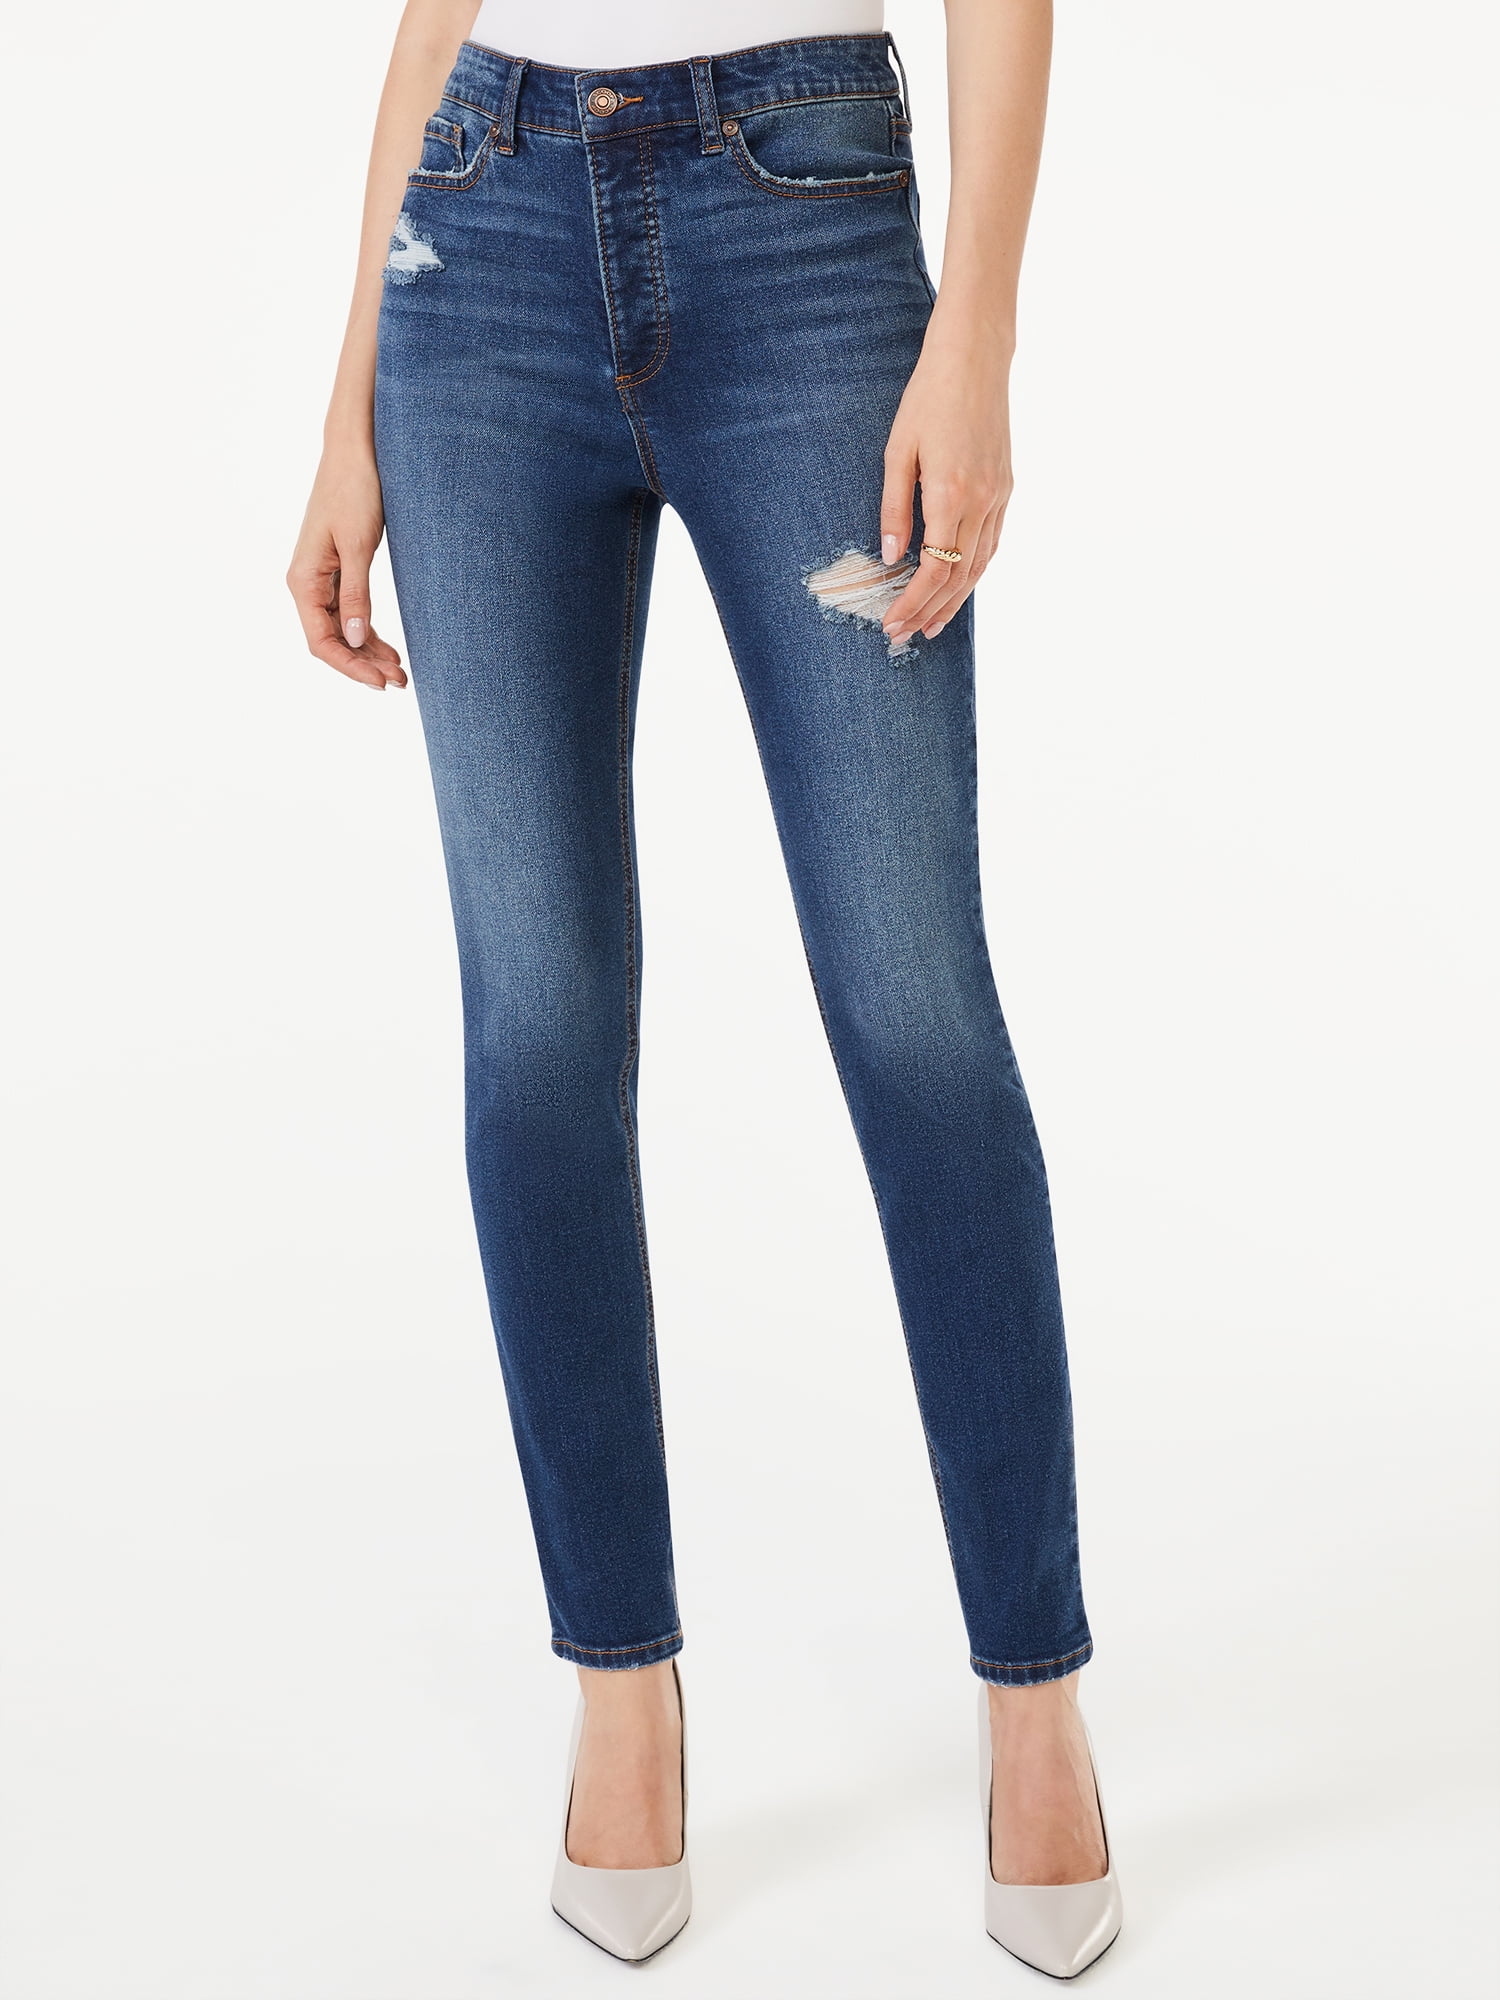 Scoop Women's Essential Skinny Jeans - Walmart.com